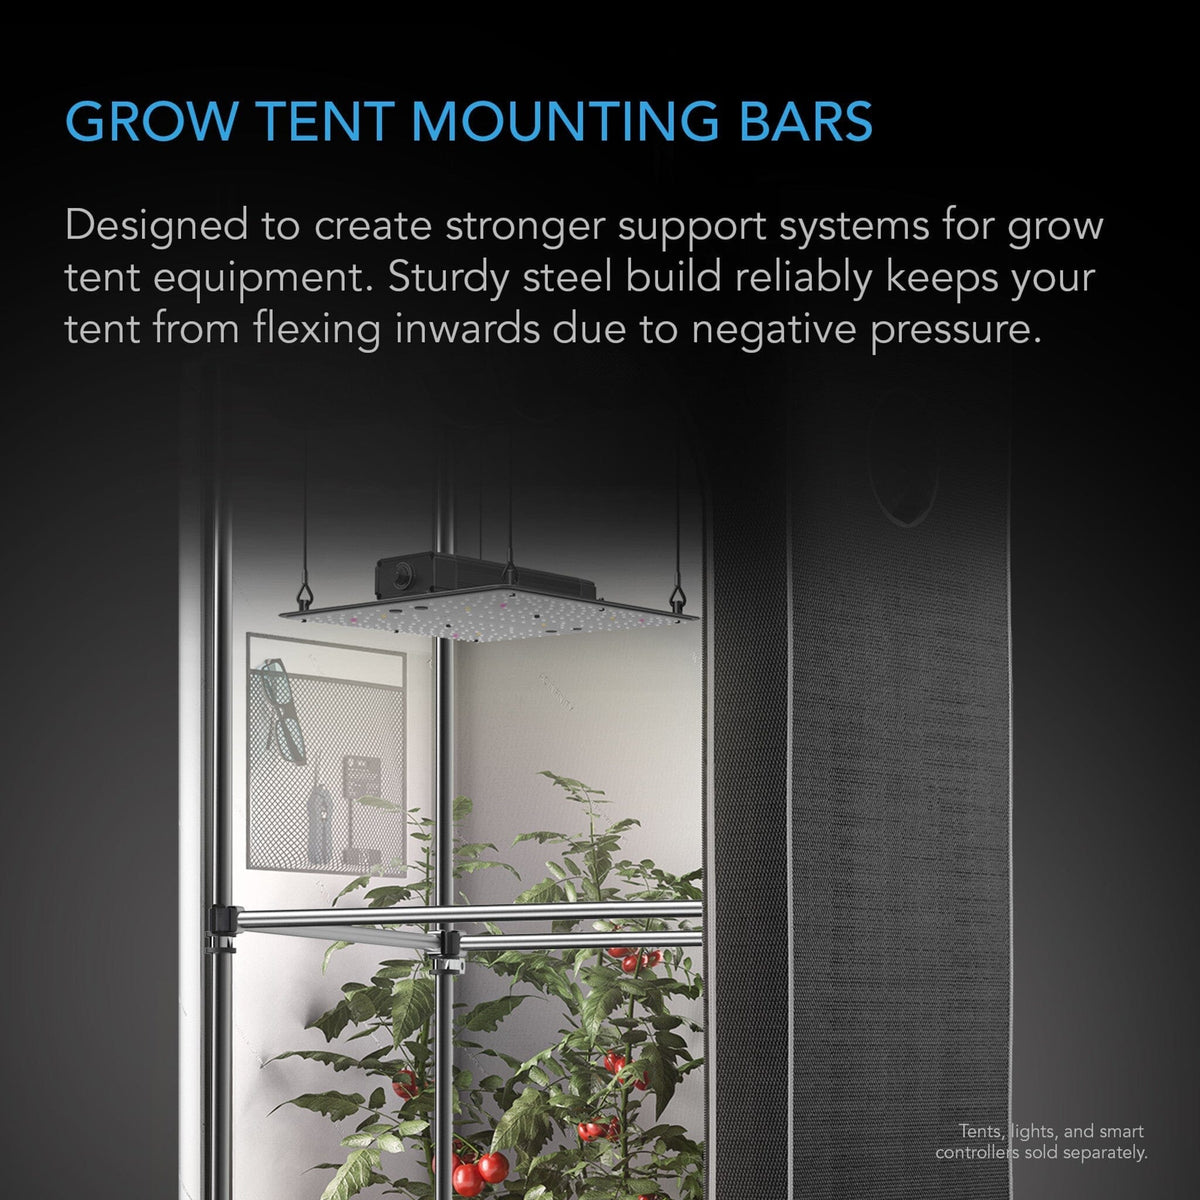 Grow tent mounting bars